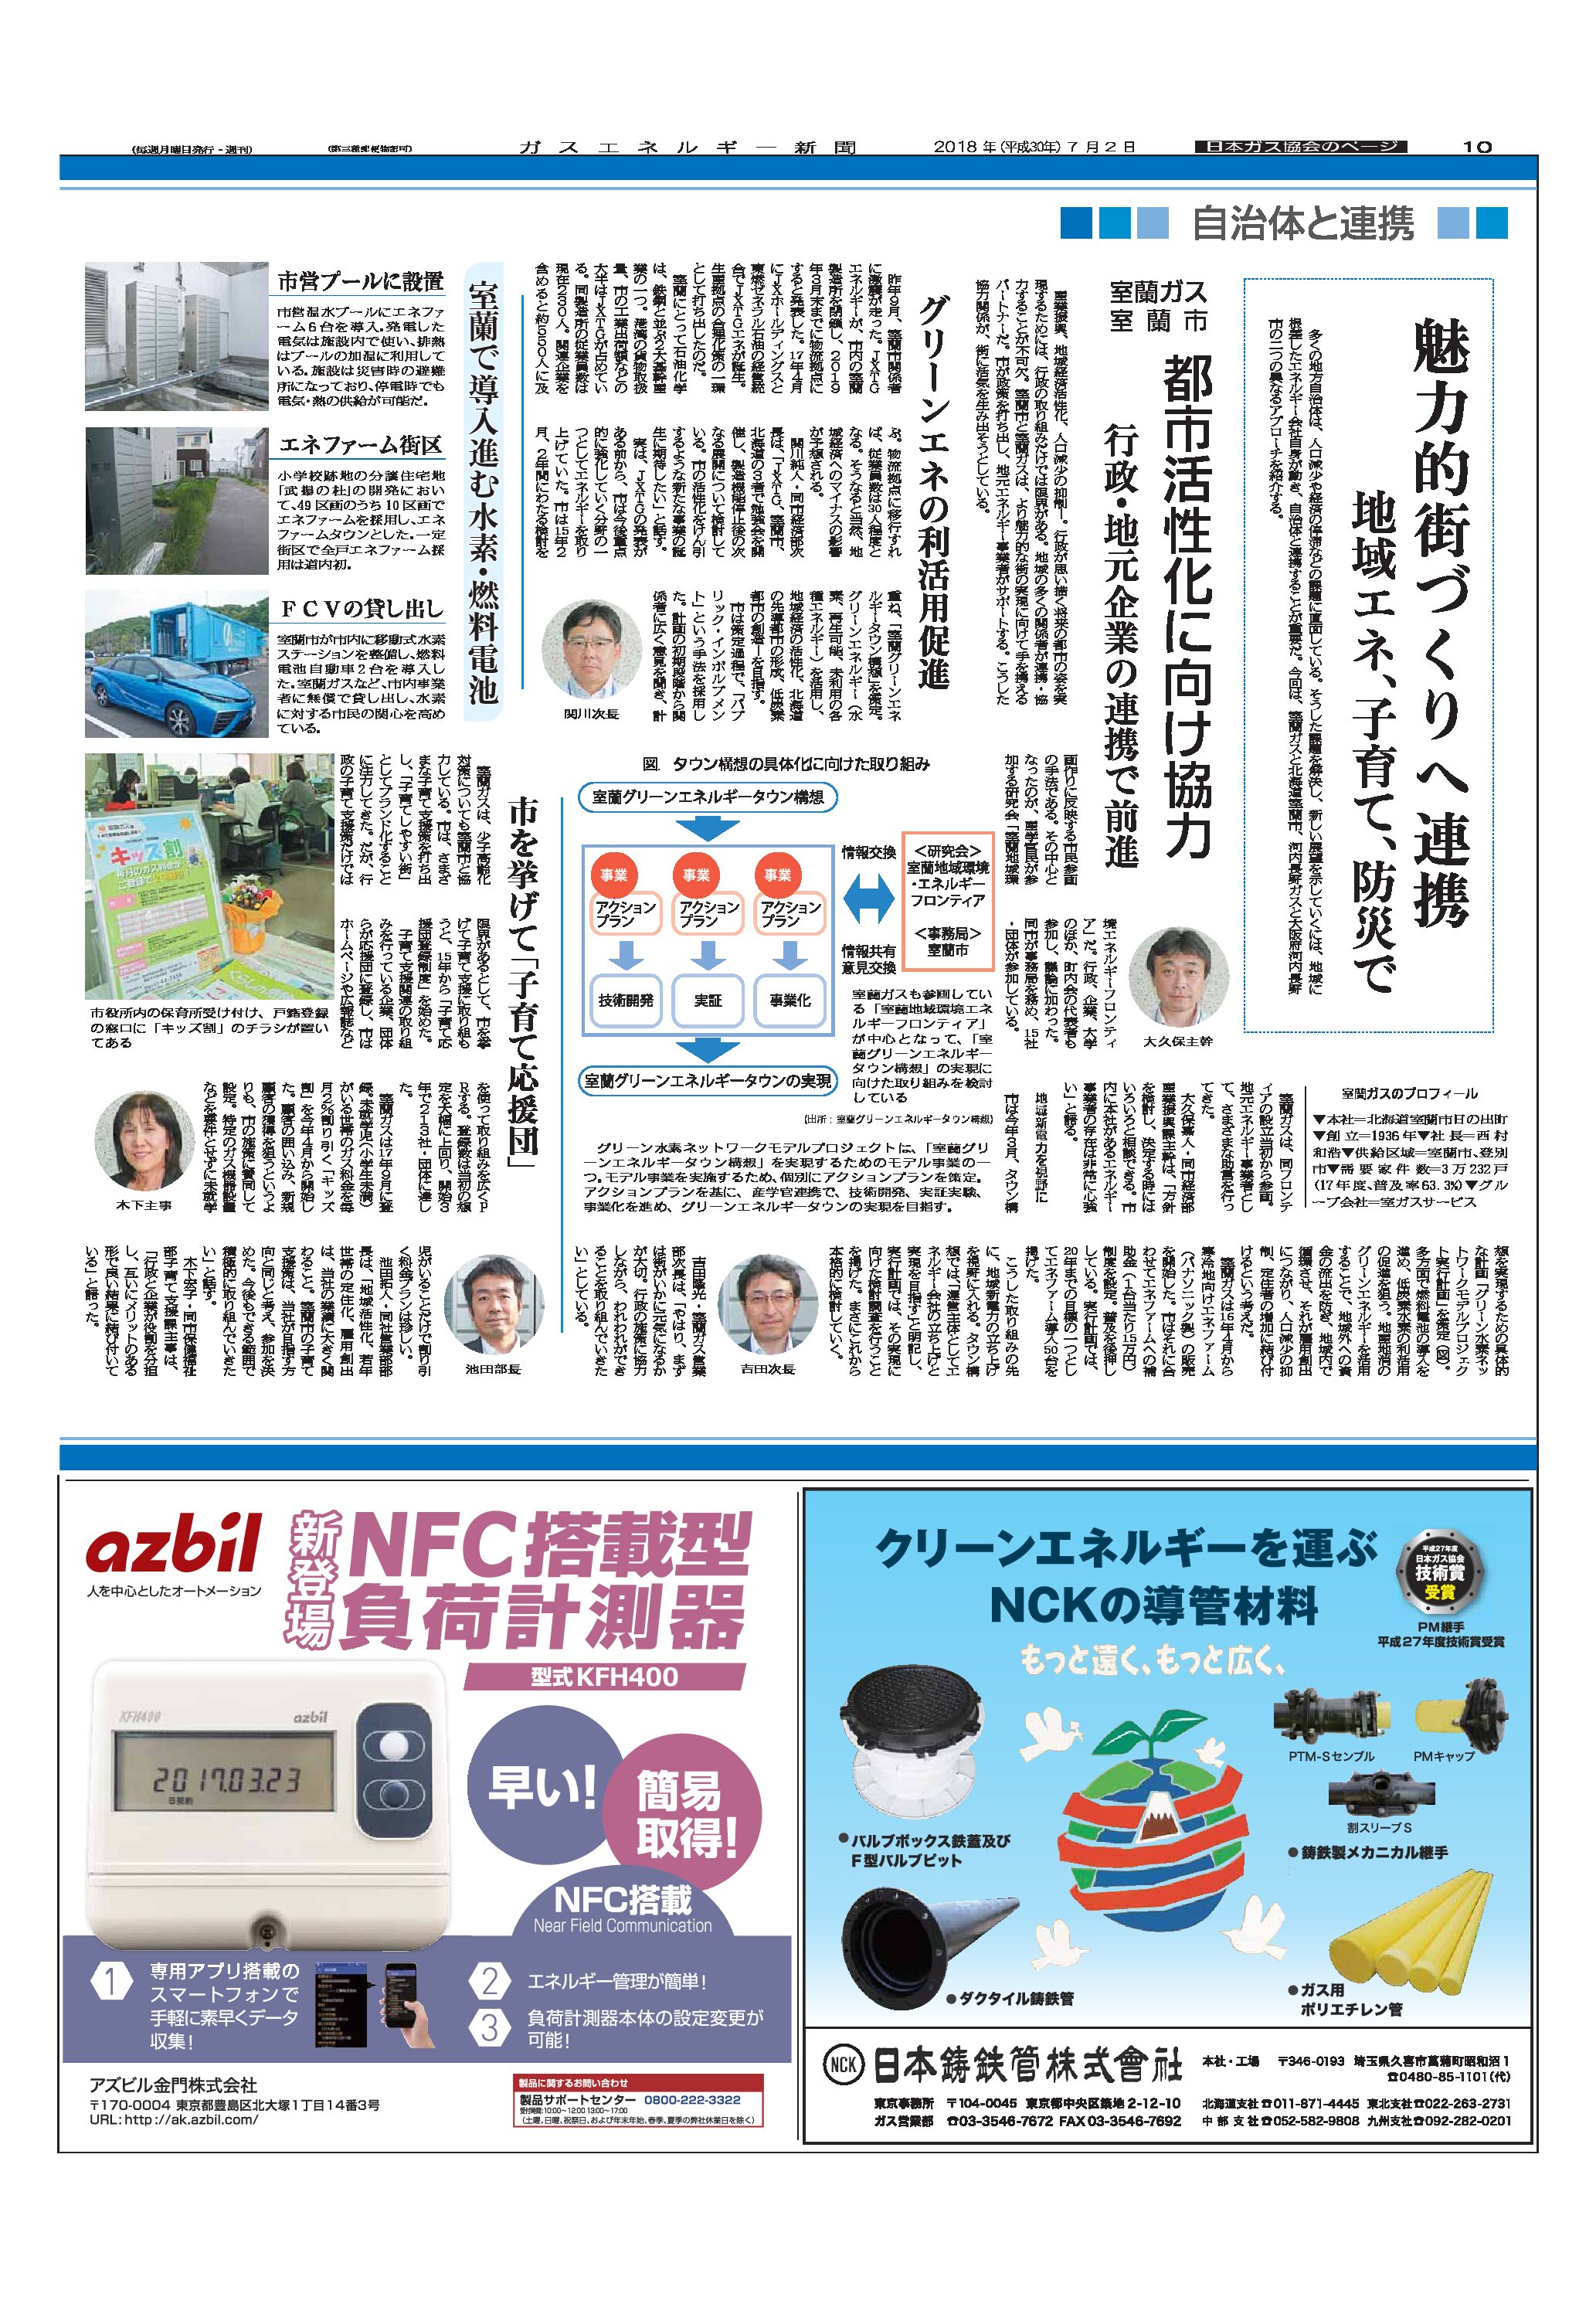 【日本ガス協会のページ】魅力的街づくりへ連携/地域エネ、子育て、防災で(事例1)室蘭ガス、室蘭市